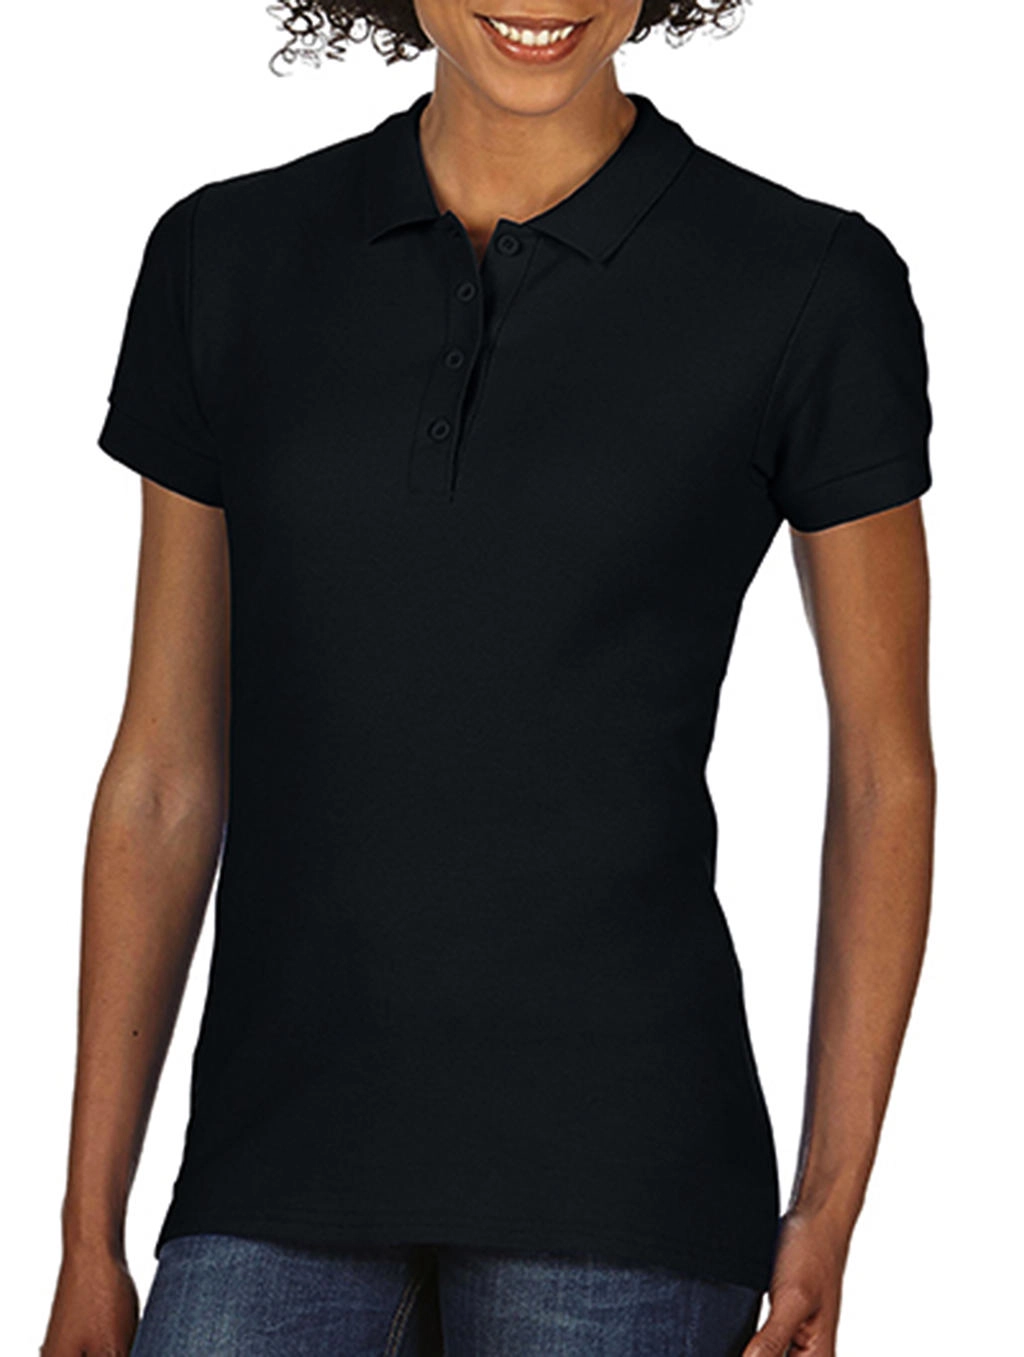 Softstyle® Ladies Double Pique Polo zum Besticken und Bedrucken in der Farbe Black mit Ihren Logo, Schriftzug oder Motiv.